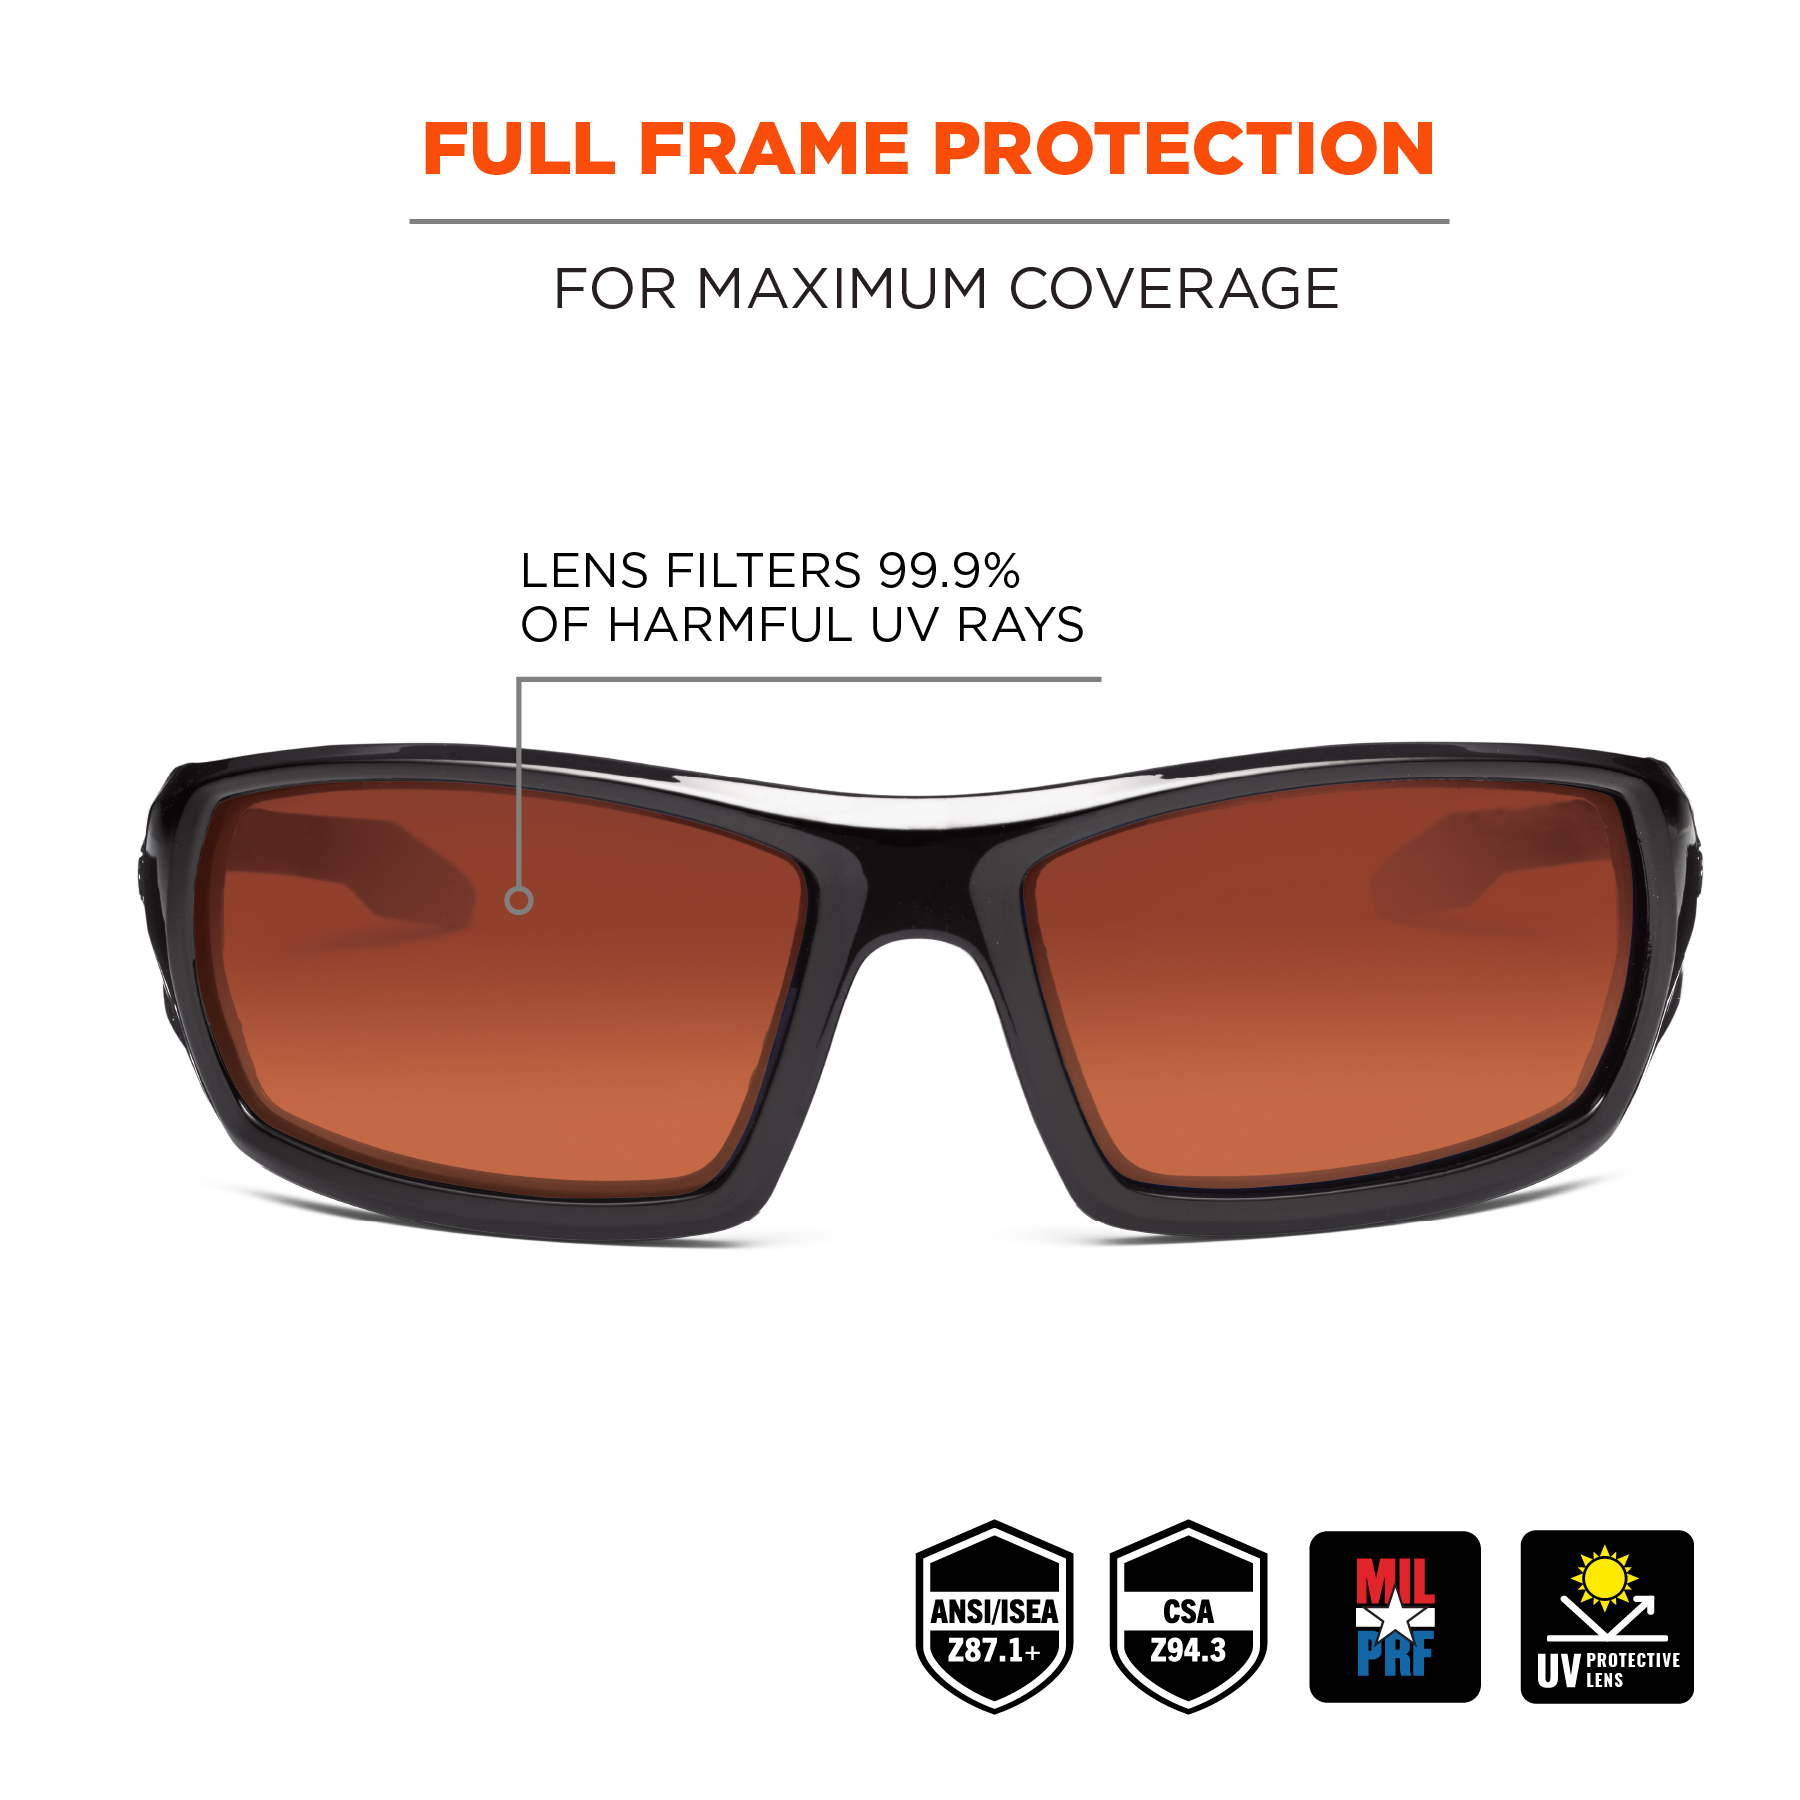 https://www.ergodyne.com/sites/default/files/product-images/50021-odin-safety-glasses-full-frame-protection-black-frame-pz-copper.jpg